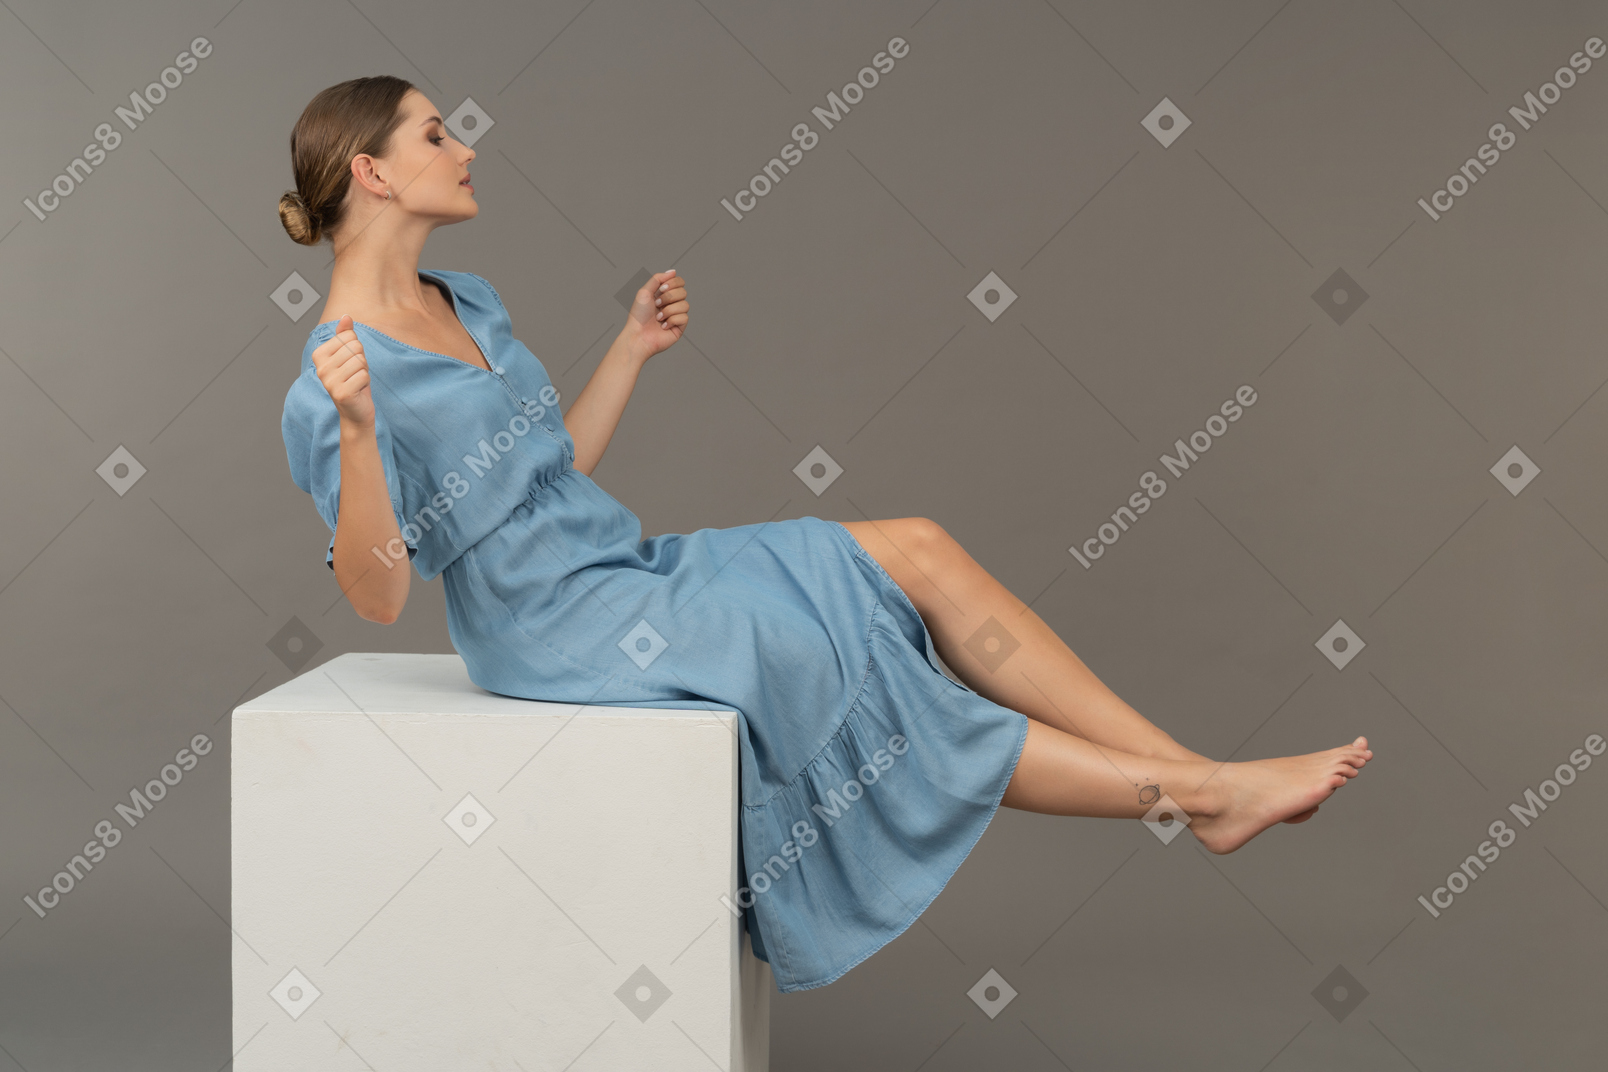 Vista lateral de una joven sentada en un cubo y tratando de mantener el equilibrio